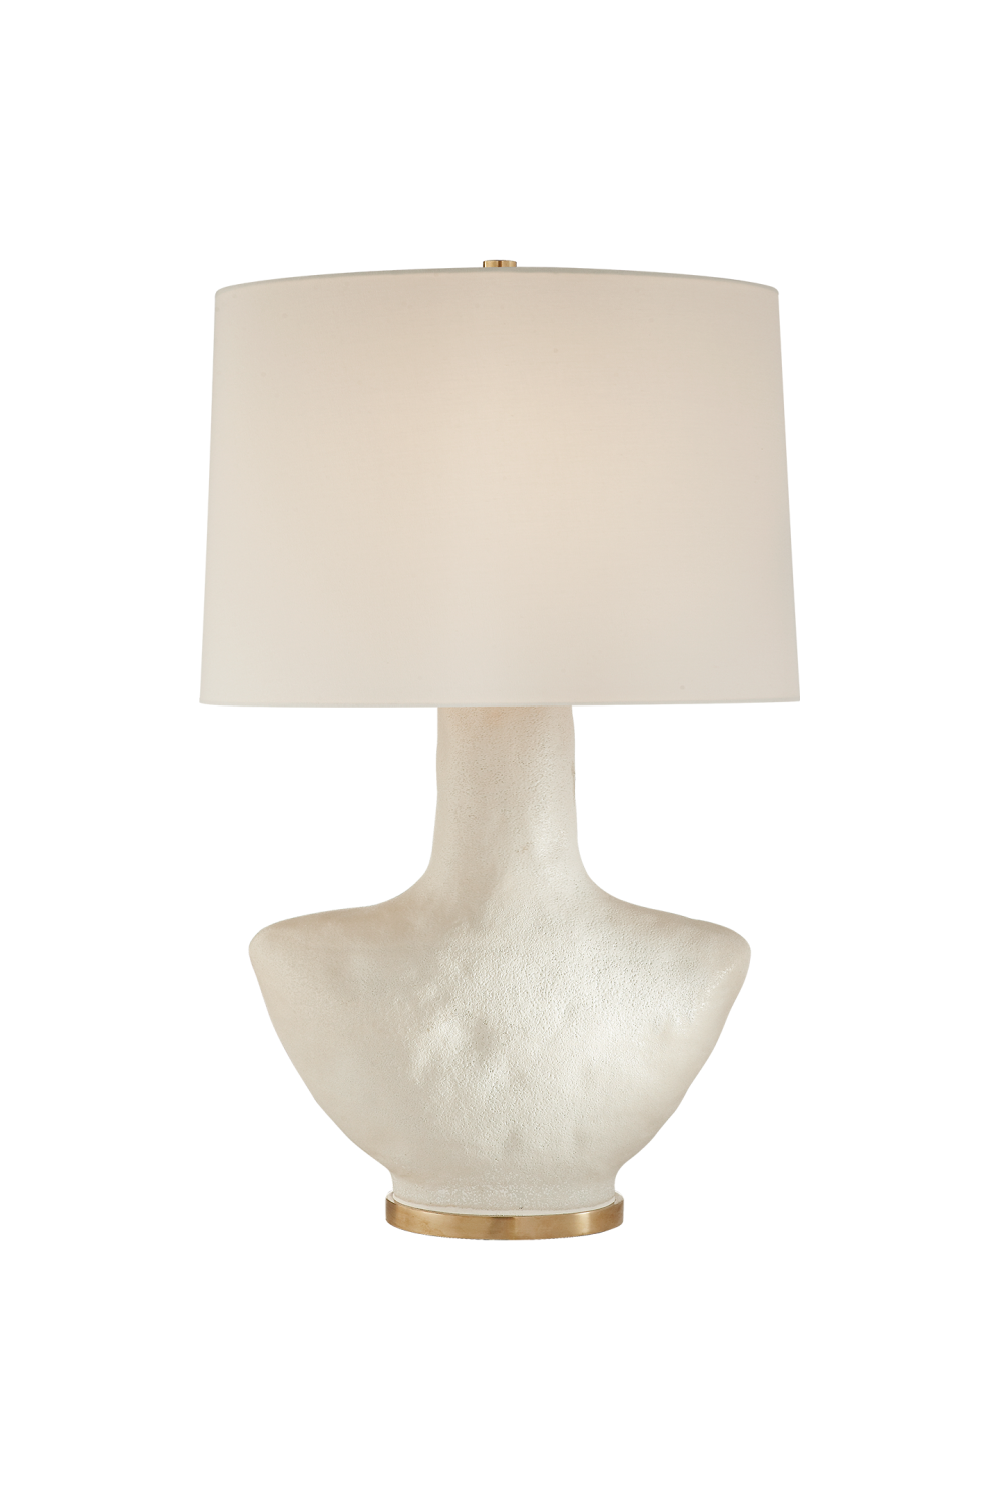 White Ceramic Table Lamp | Andrew Martin Armato | OROA